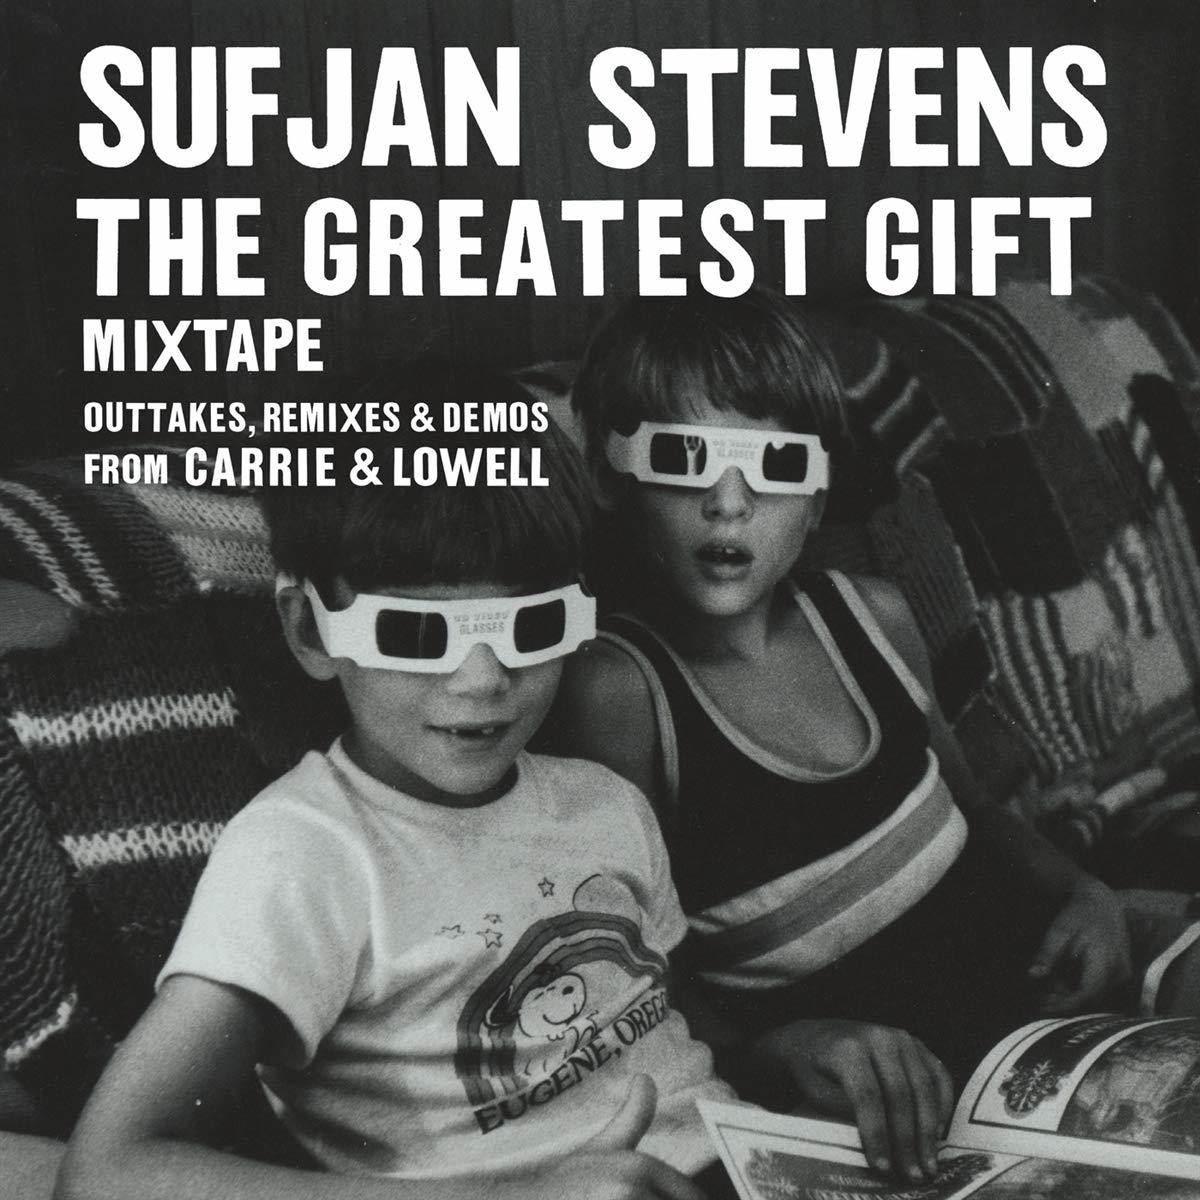 Greatest (CD) The - Sufjan Stevens - Gift